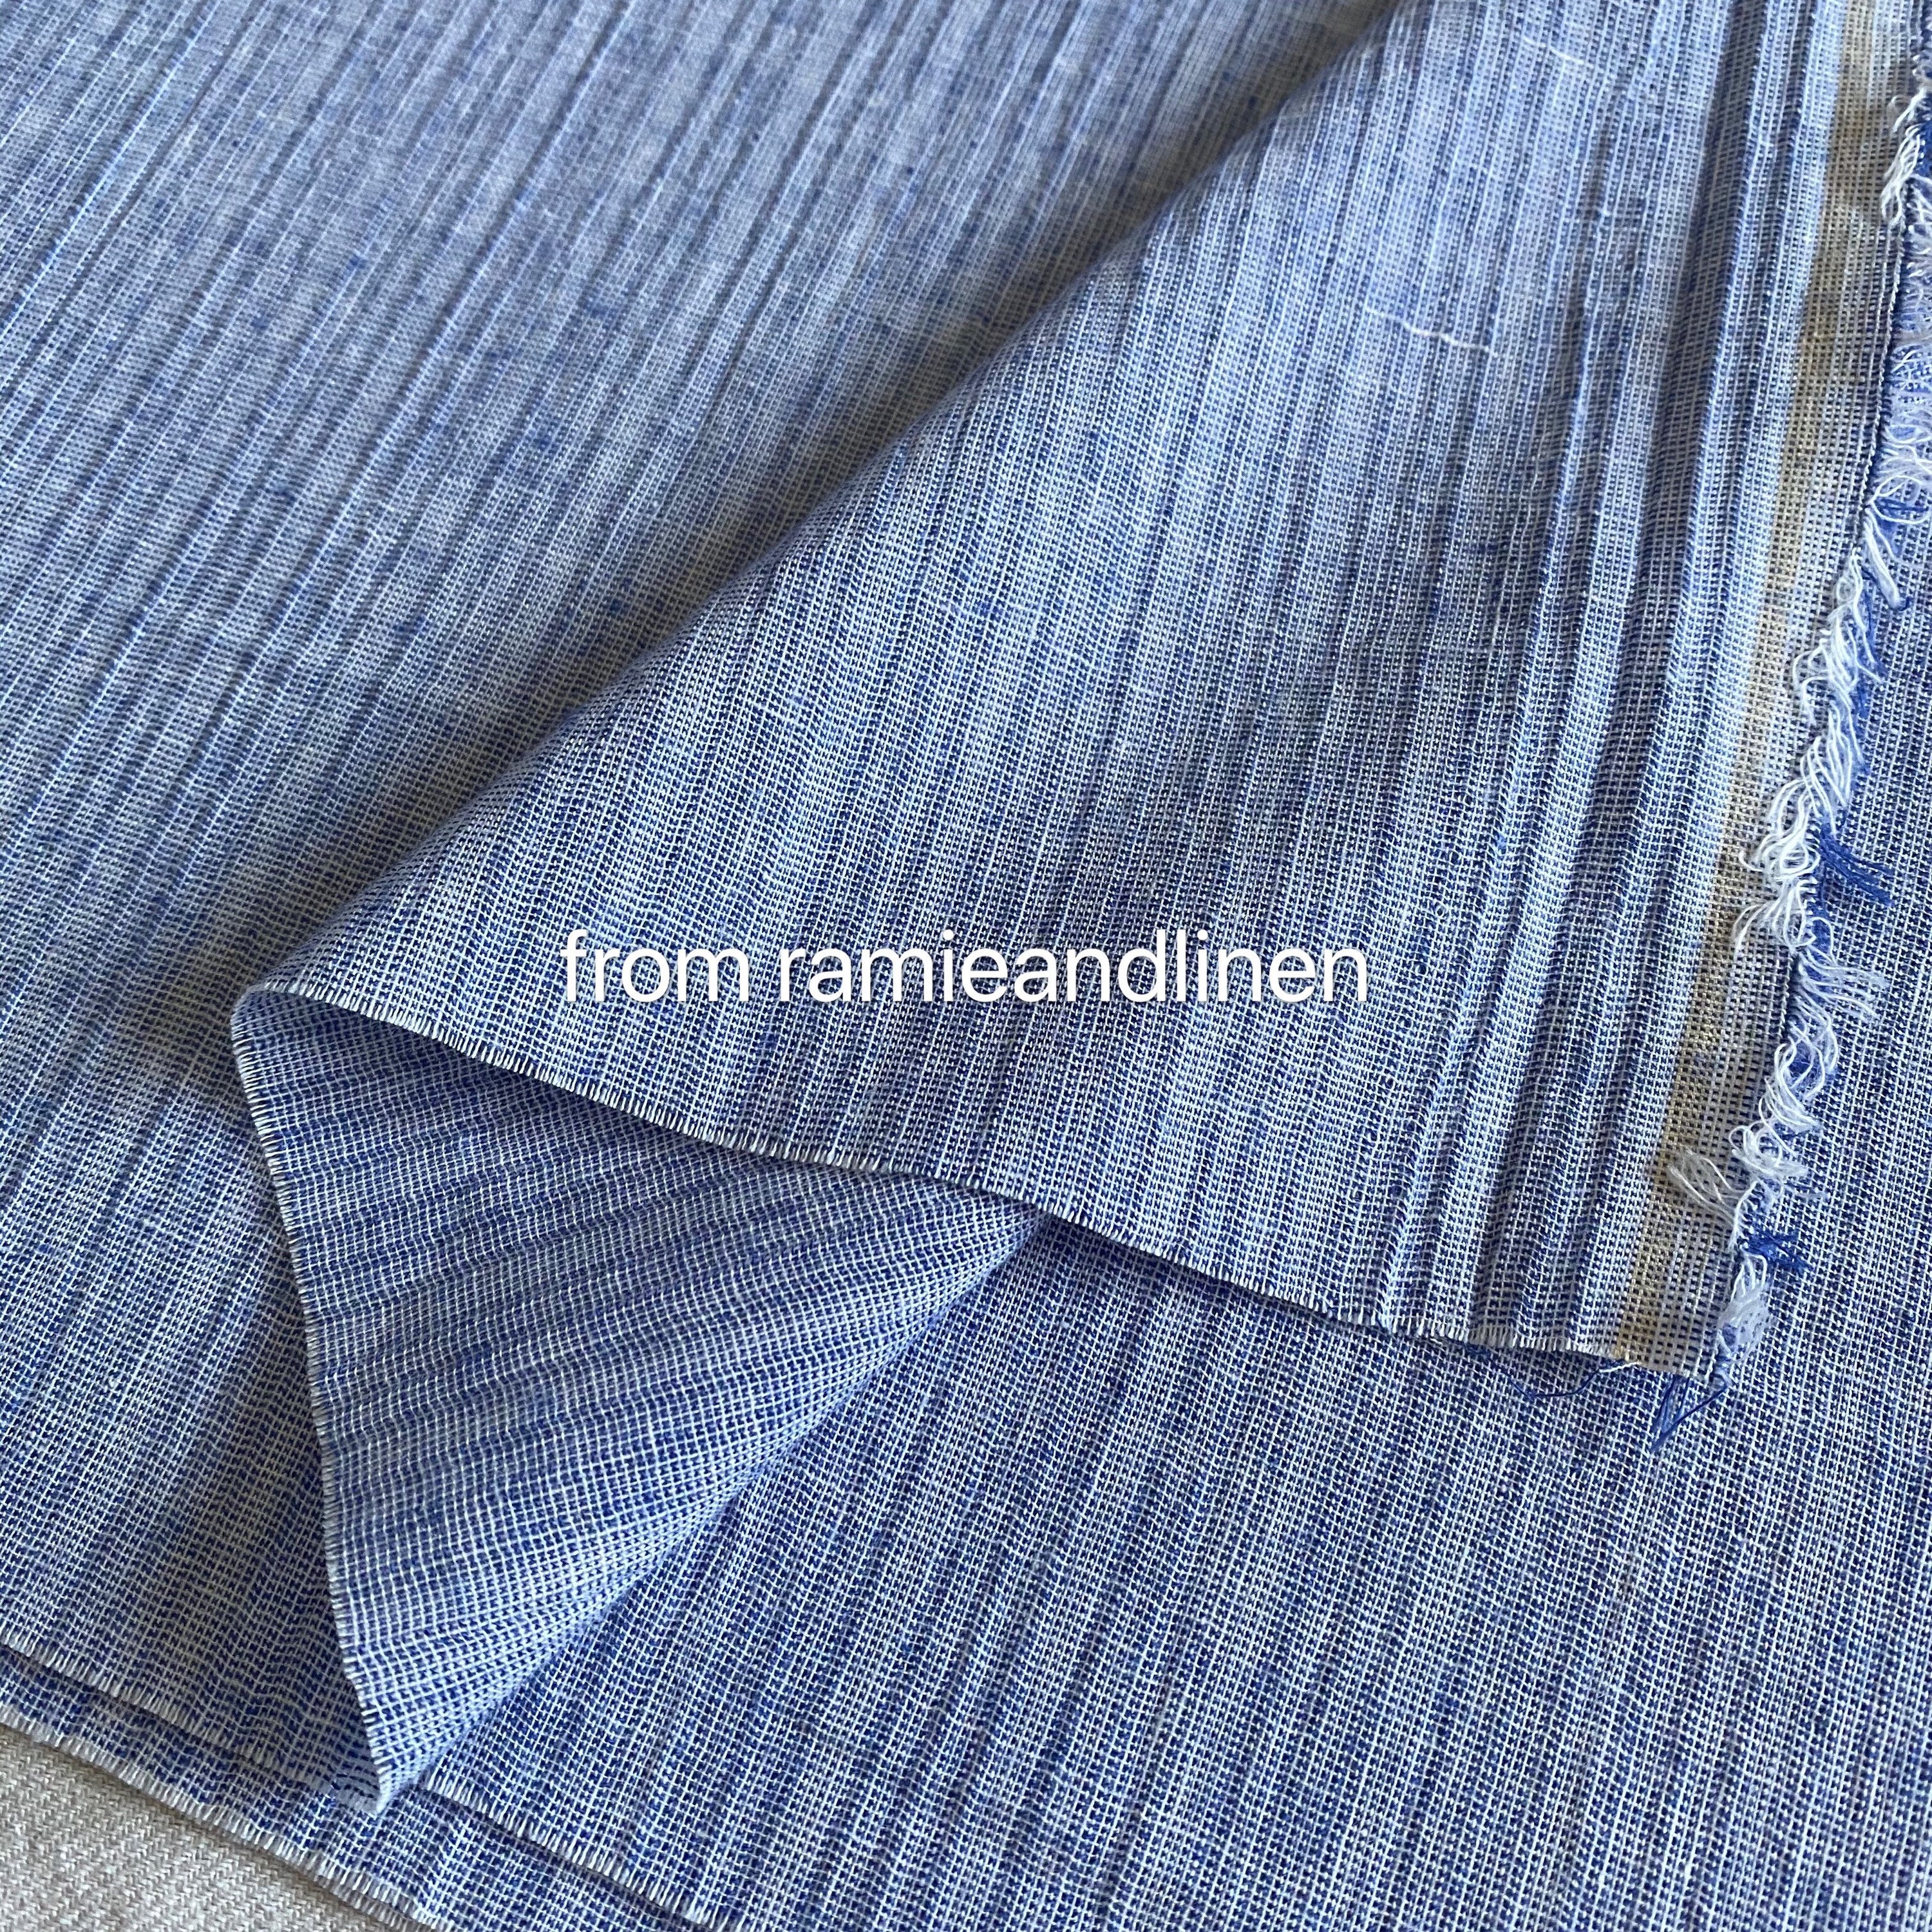 Cotton Blend Fabric, Soft Yarn Dyed Blue Gauze Half Yard By 56 Wide